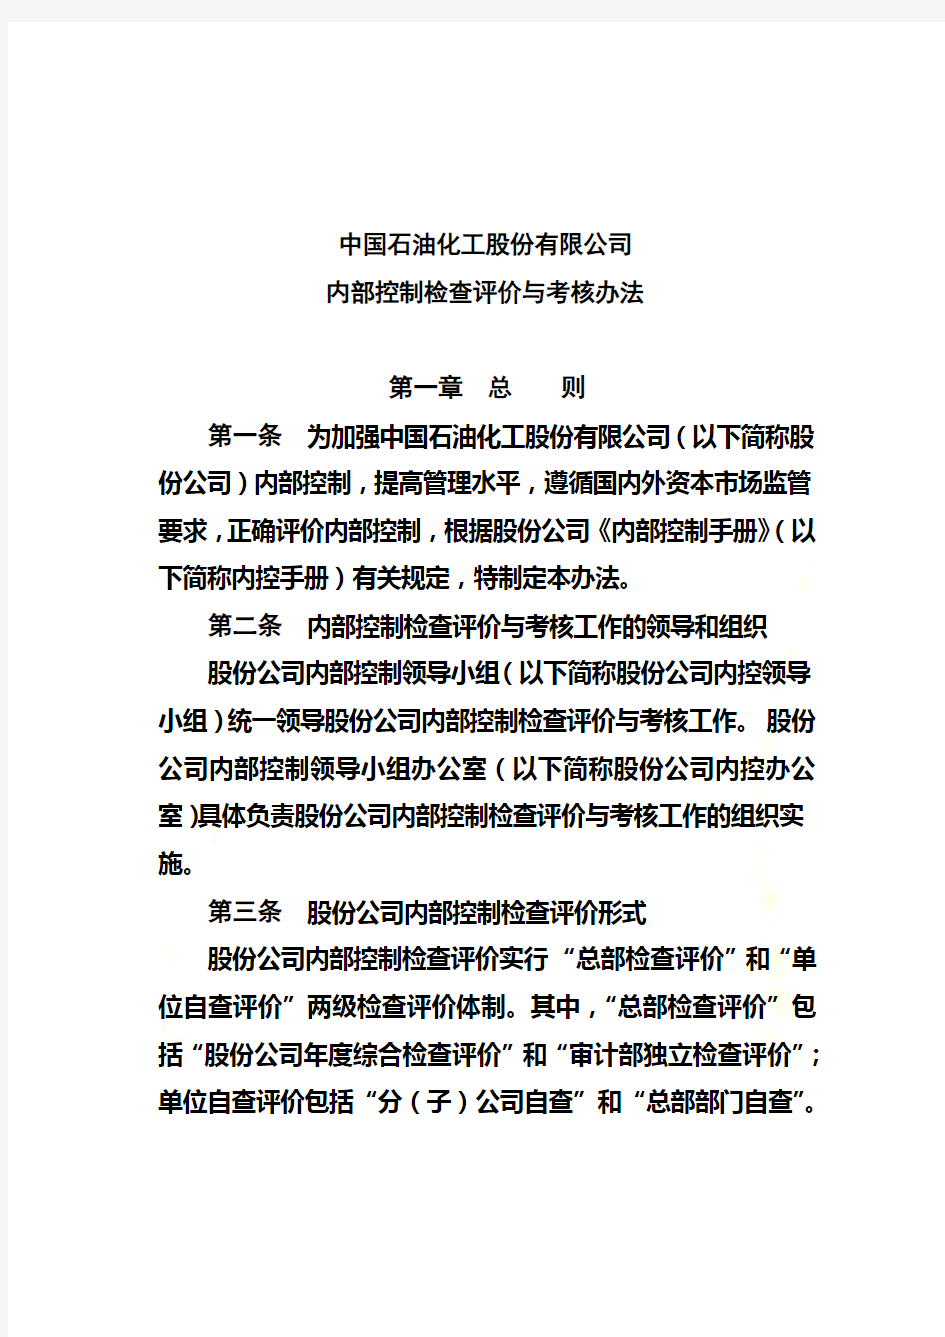 中国石化公司内部控制与业务流程汇总(115个doc,4个xls)11